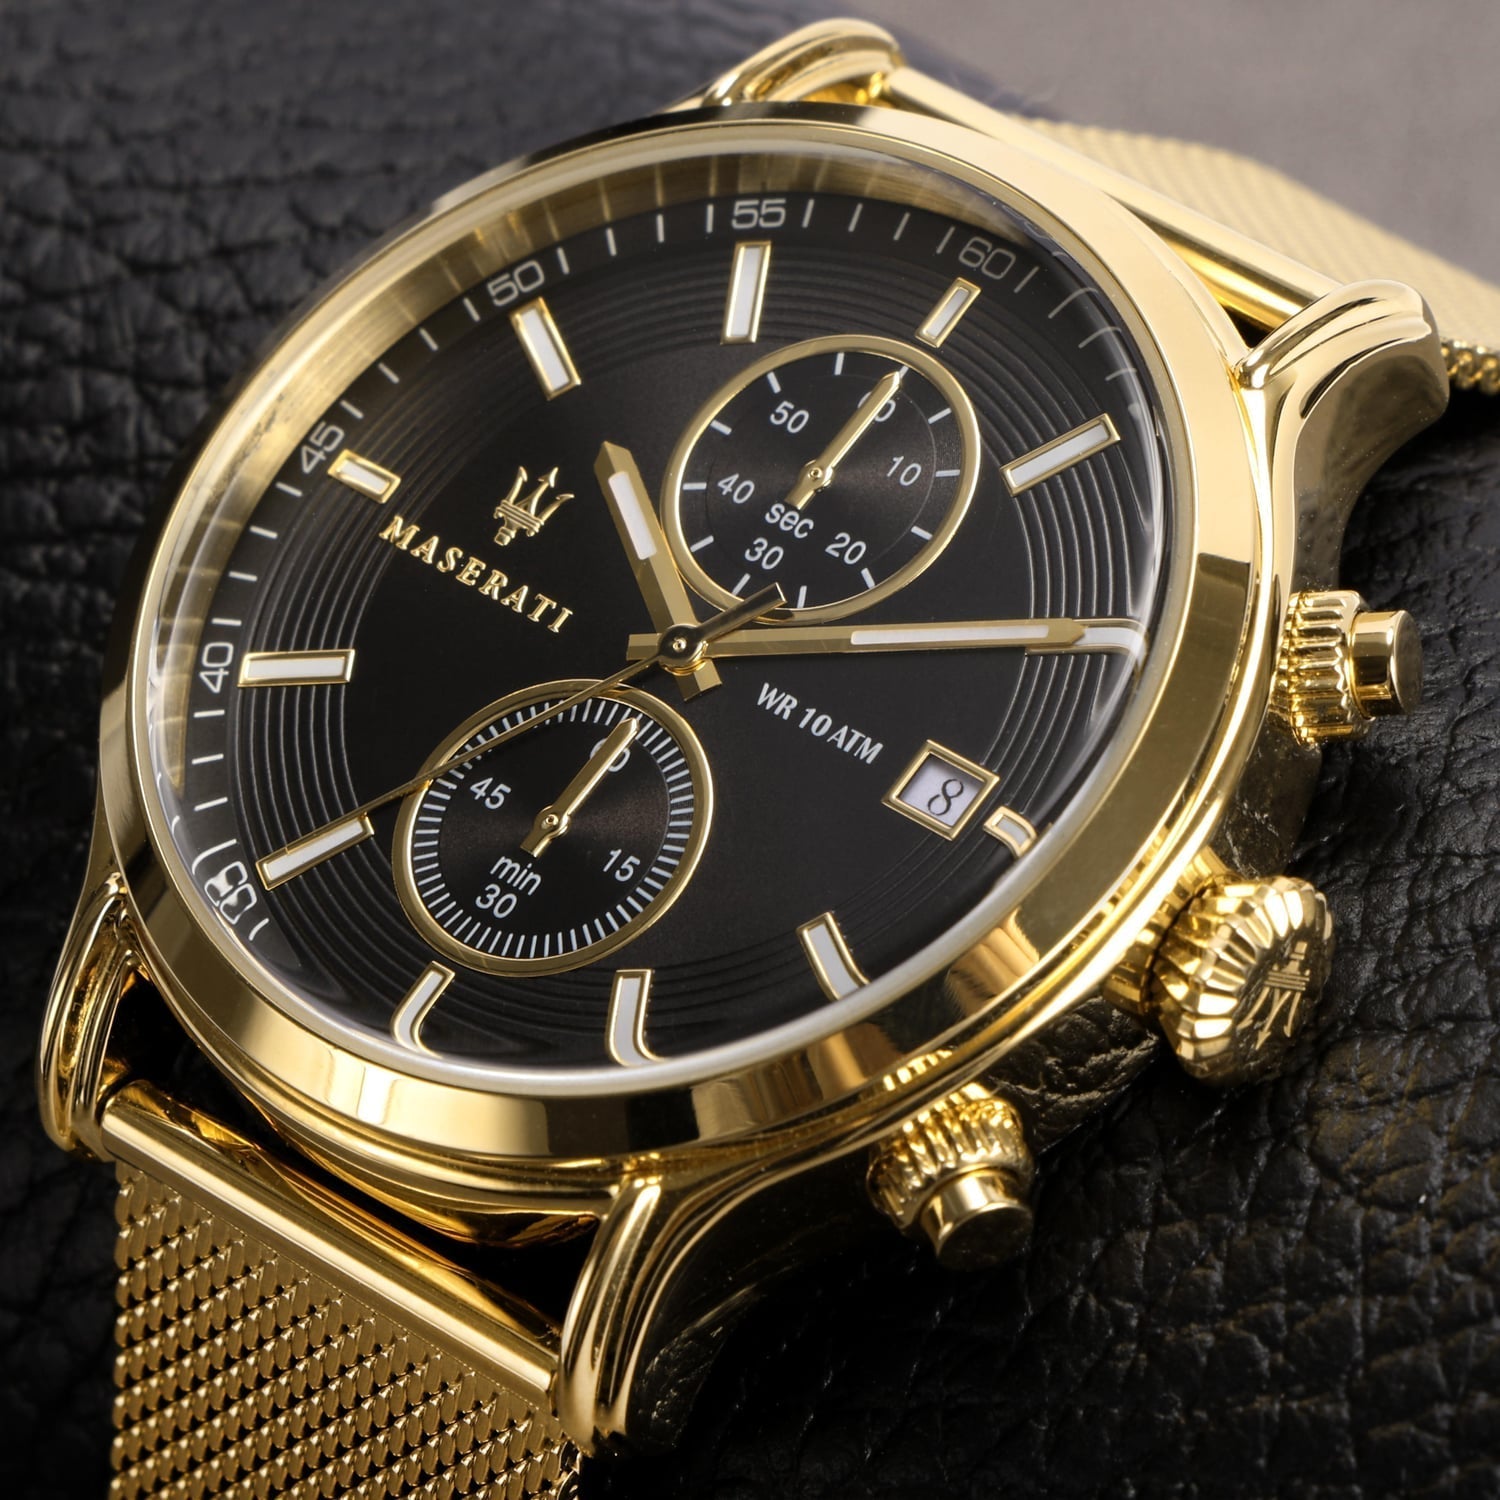 Maserati Epoca 42mm Black Dial Gold Mesh Bracelet Watch For Men - R8873618007